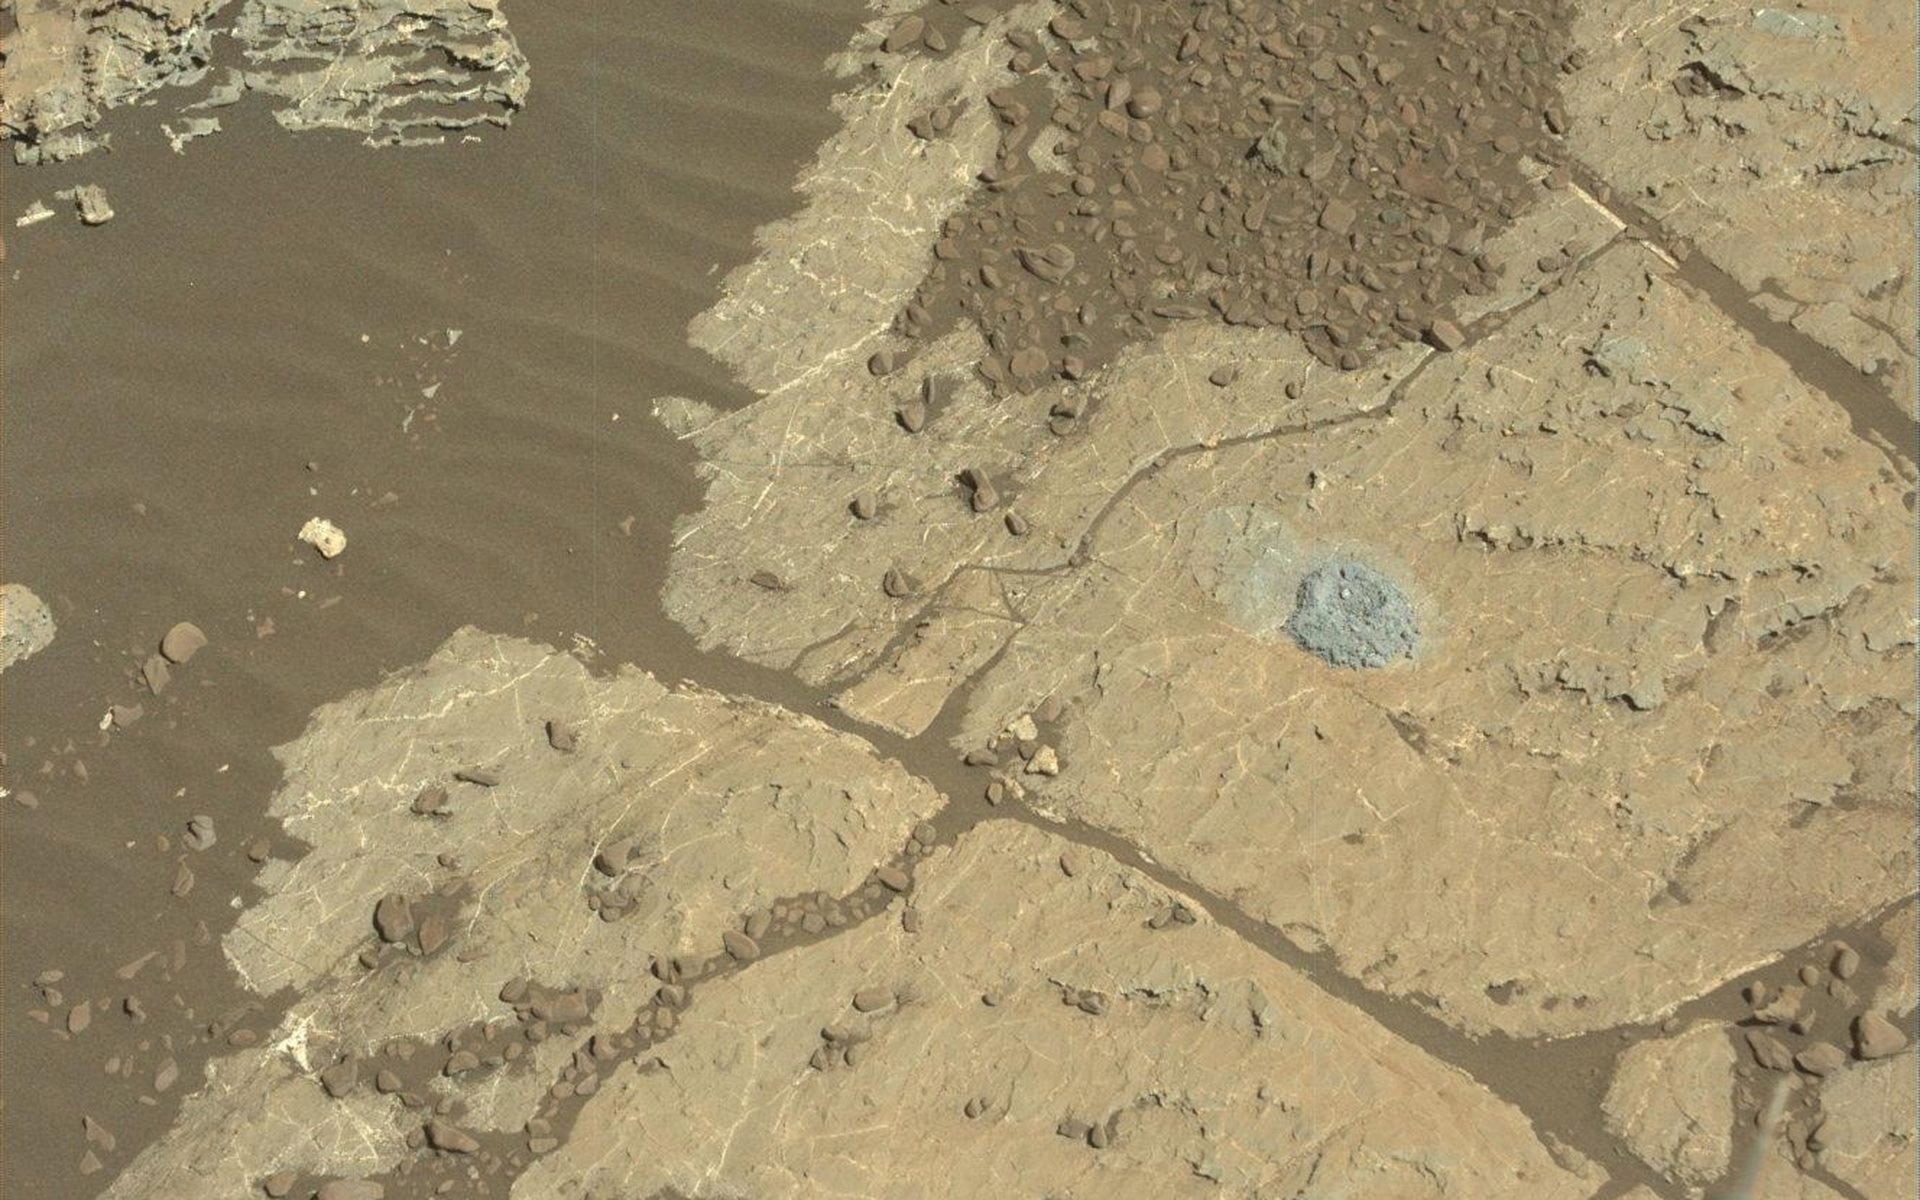 Ce trou dans une roche du site d'Orcadie Lake, sur Mars,&nbsp;a permis de vérifier&nbsp;que la nouvelle méthode d'utilisation du foret de Curiosity fonctionnait très bien.&nbsp;© Nasa, JPL-Caltech,&nbsp;MSSS